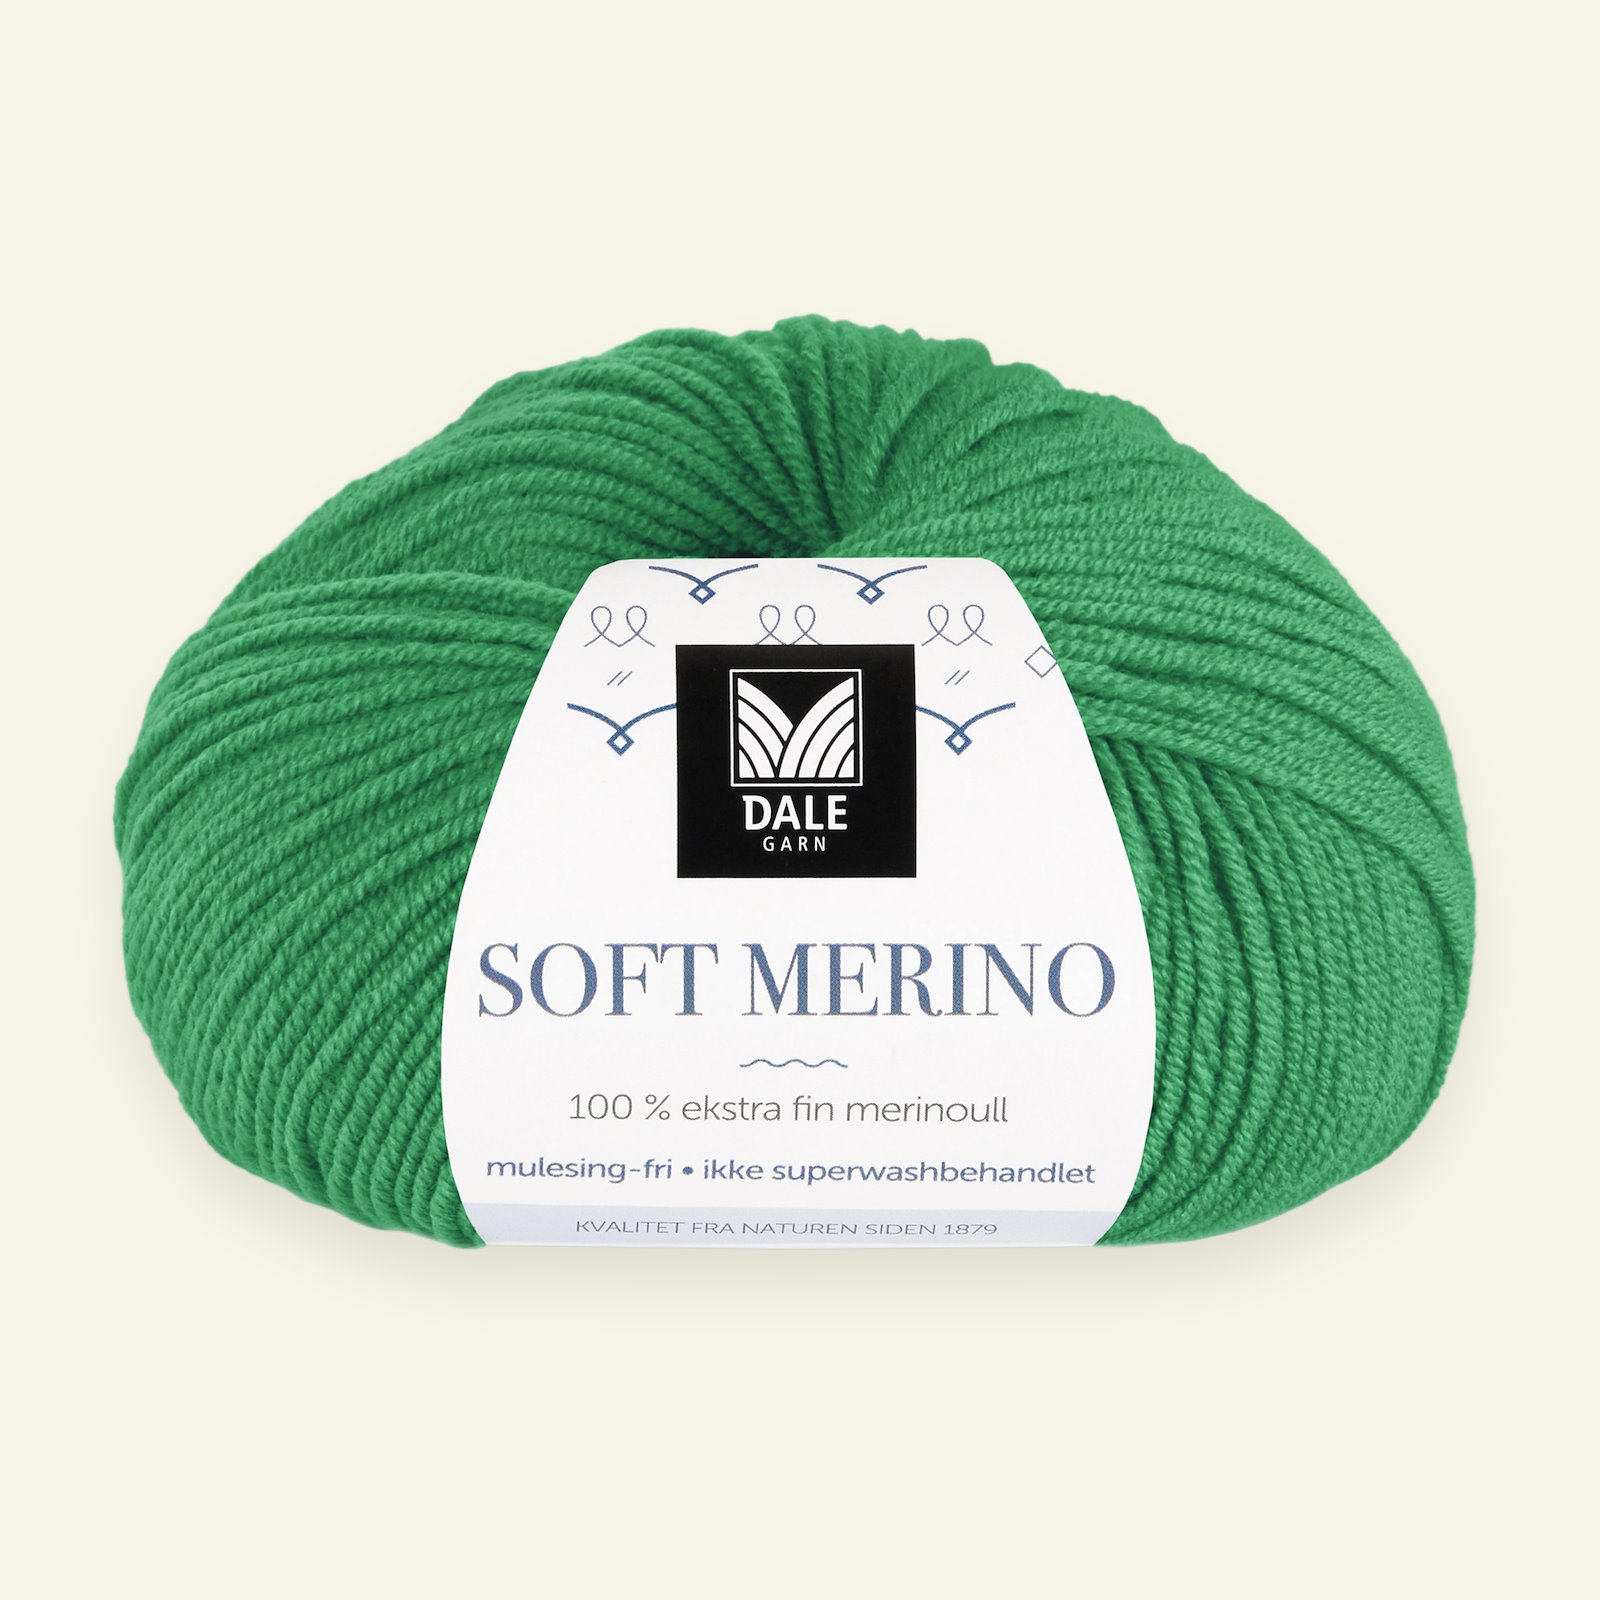 Dale Garn, 100% extra fint merinogarn "Soft Merino", grön (3030) 90000351_pack